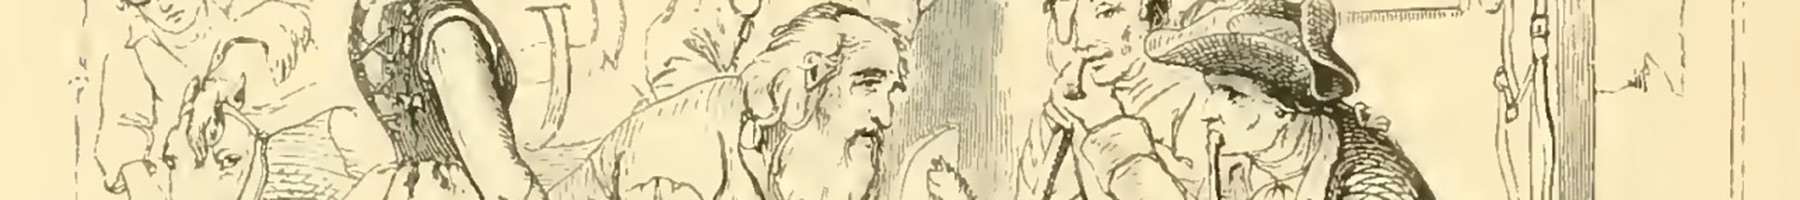 Rip Van Winkle Telling His Fabulous Story, an etching